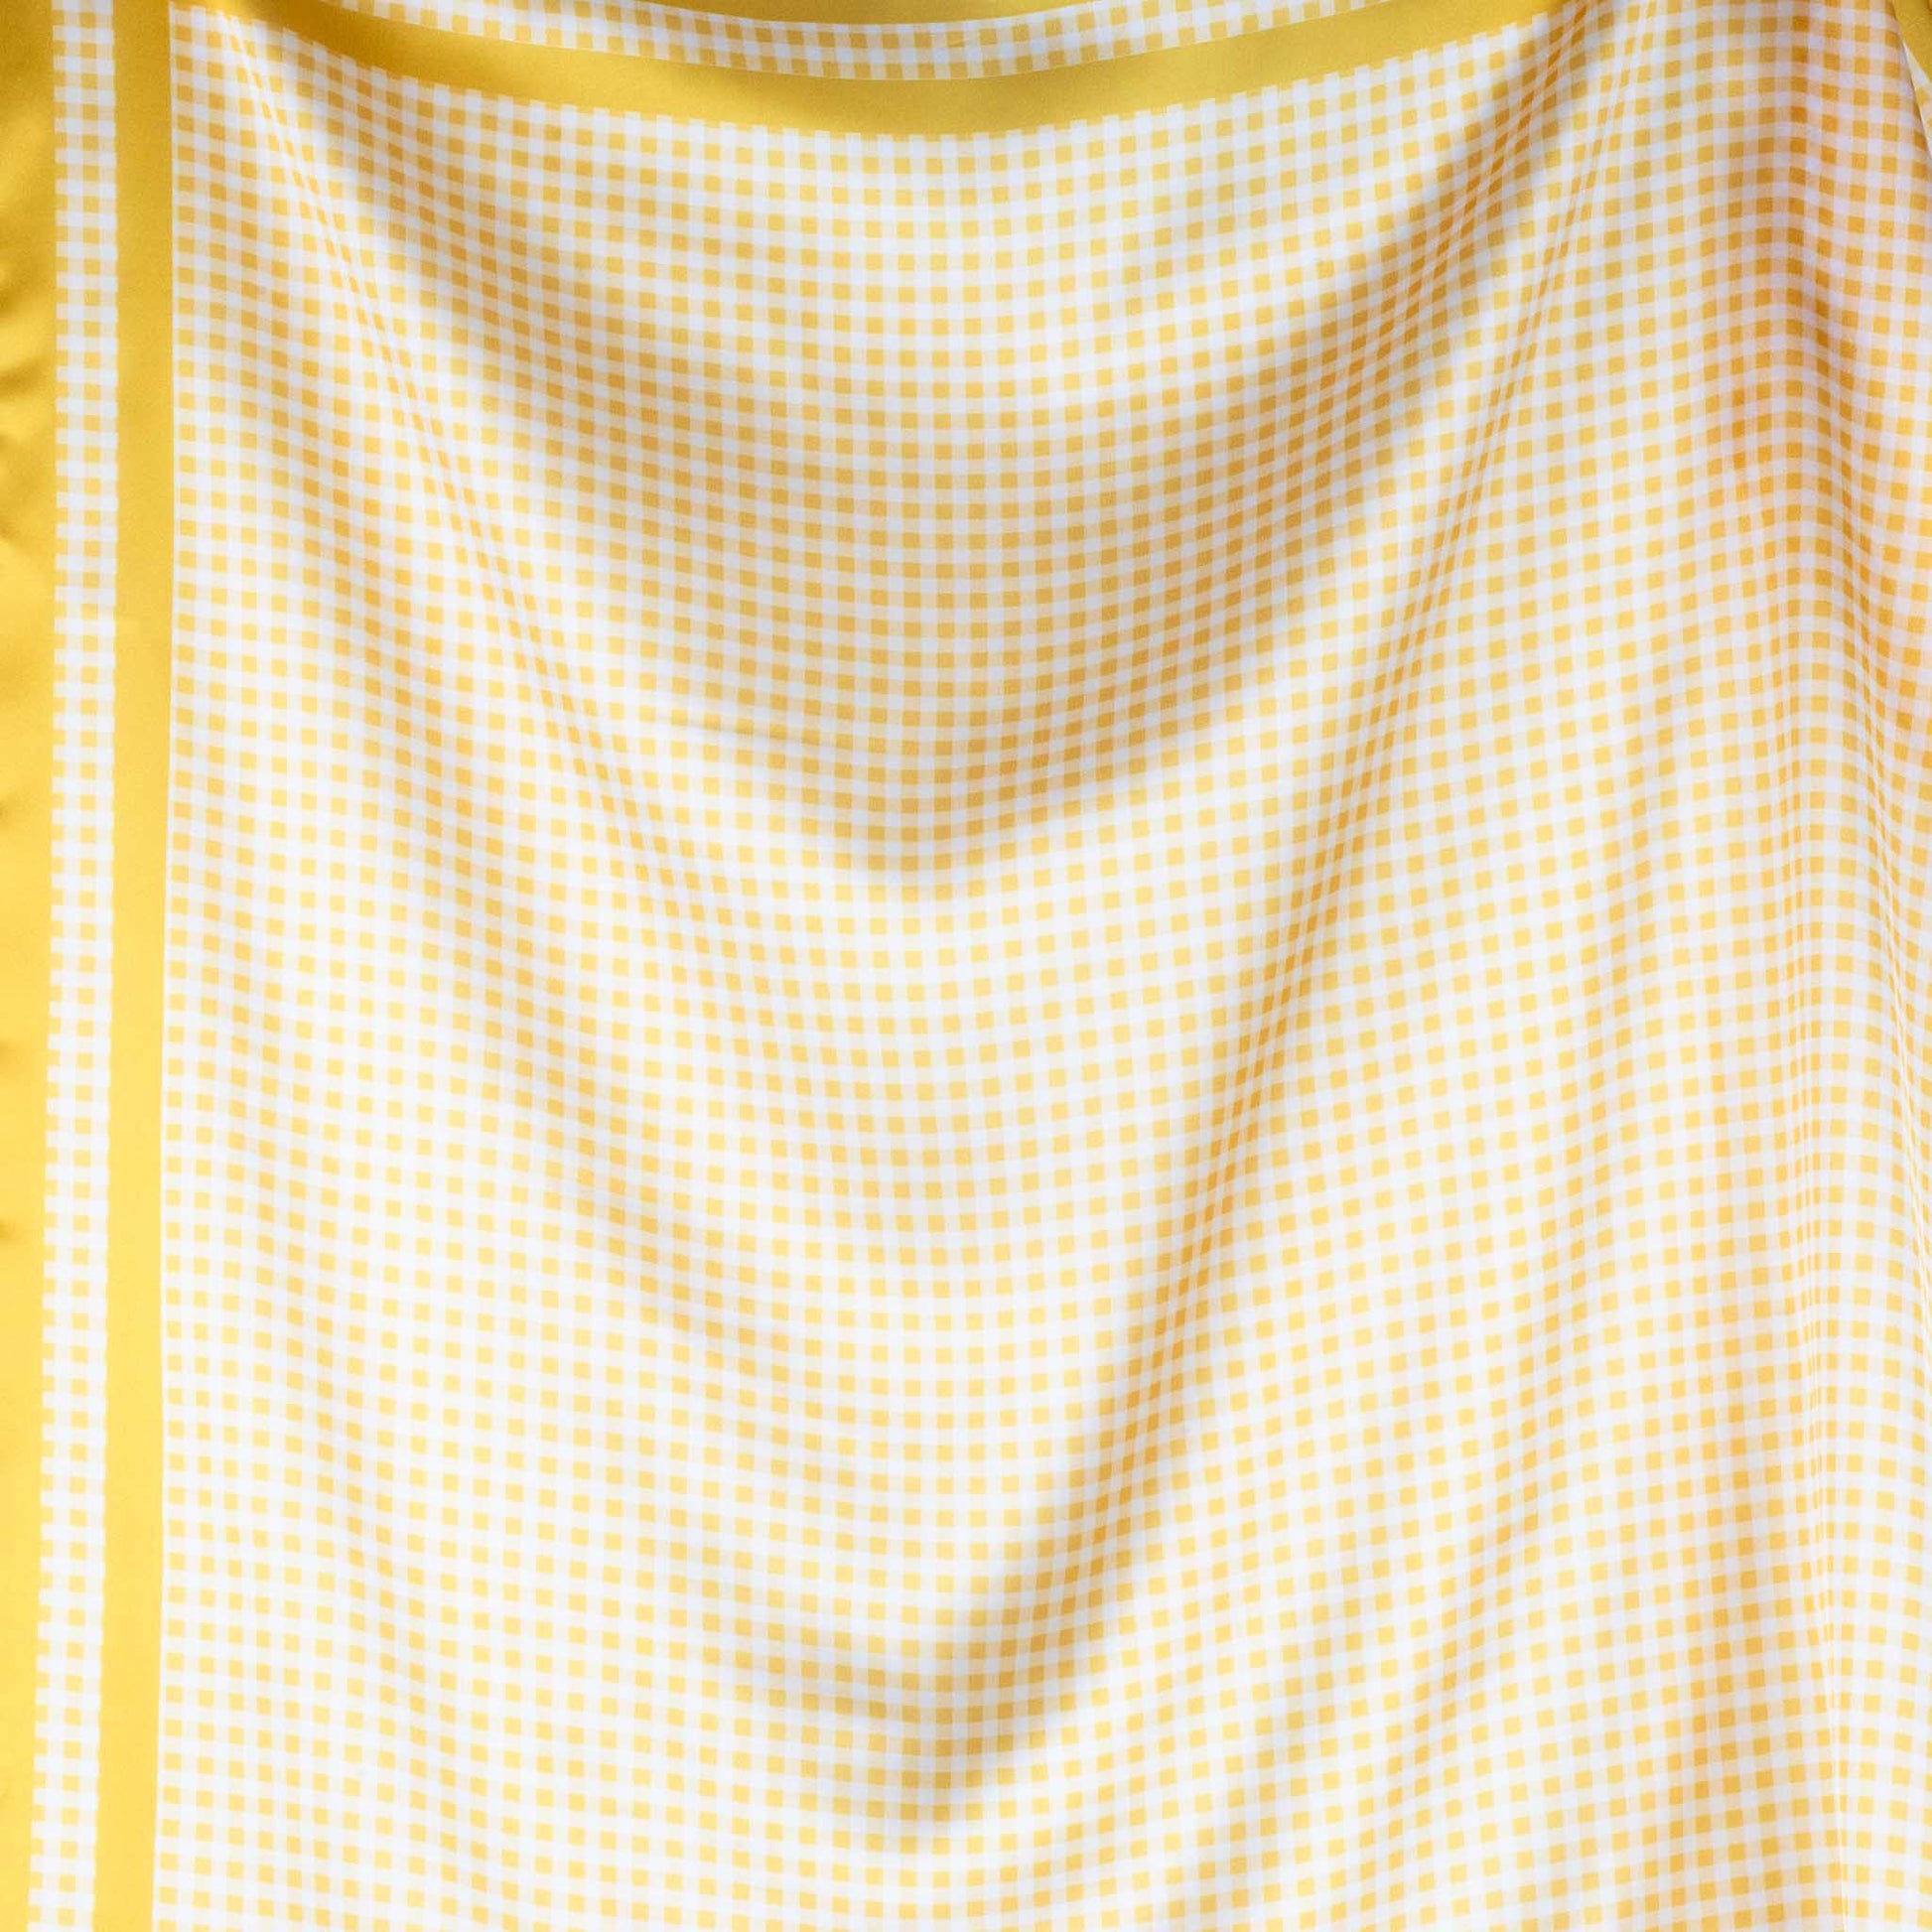 Eșarfă damă din mătase cu imprimeu în carouri mici, 60 x 60 cm - Galben